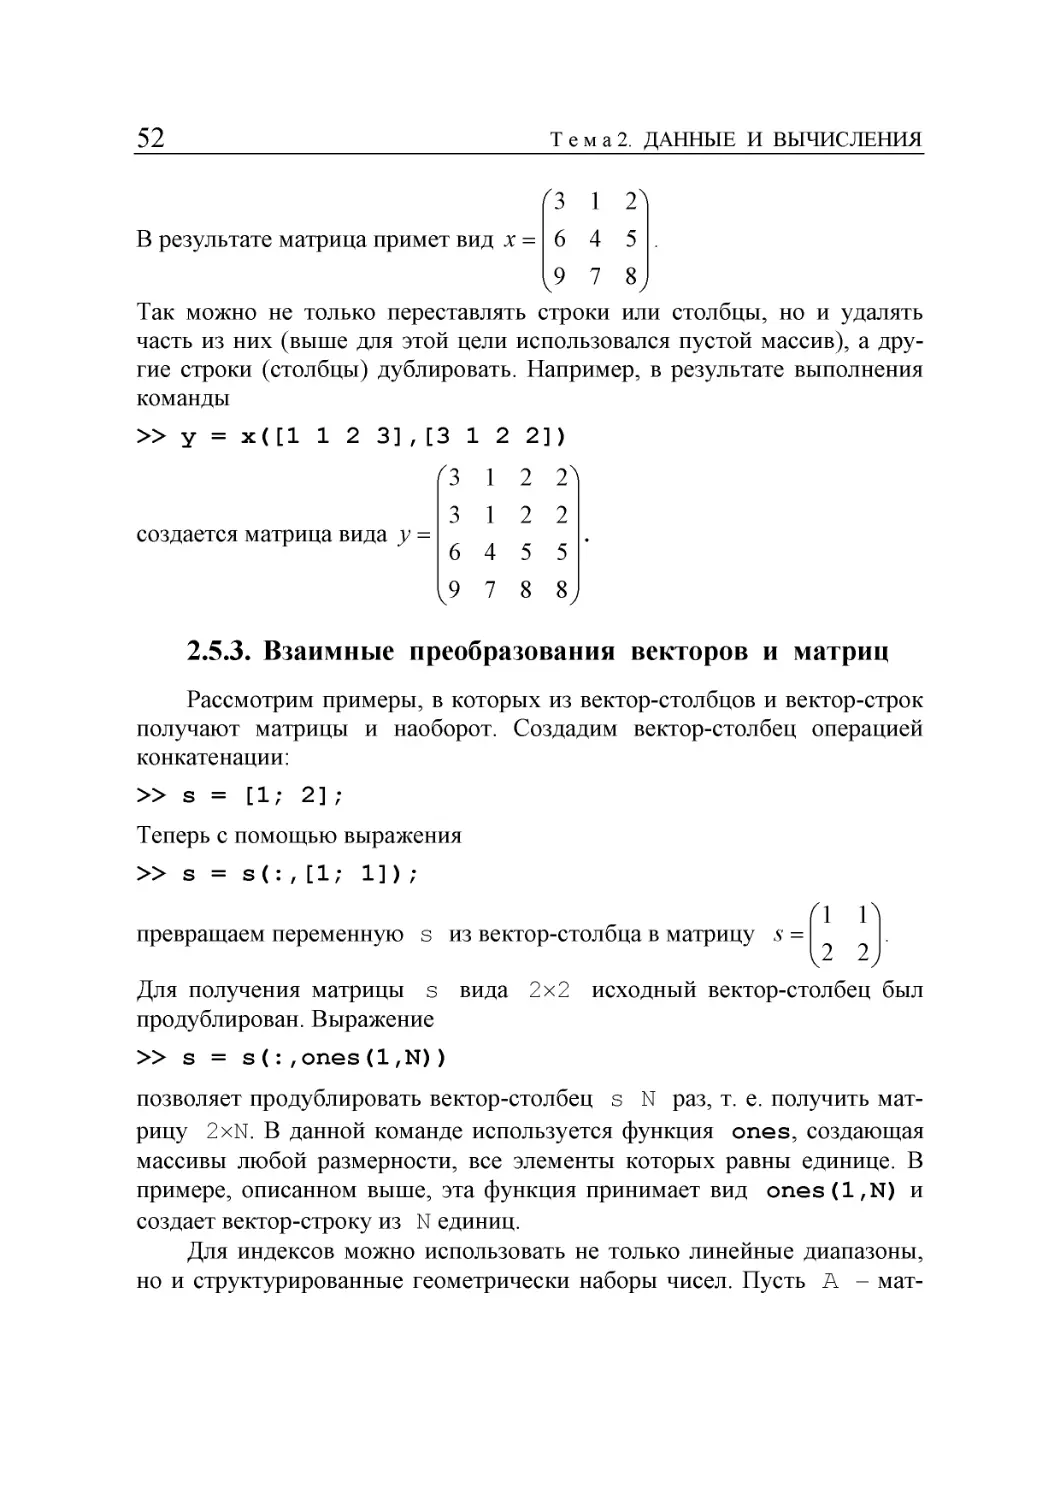 2.5.3. Взаимные  преобразования  векторов  и  матриц